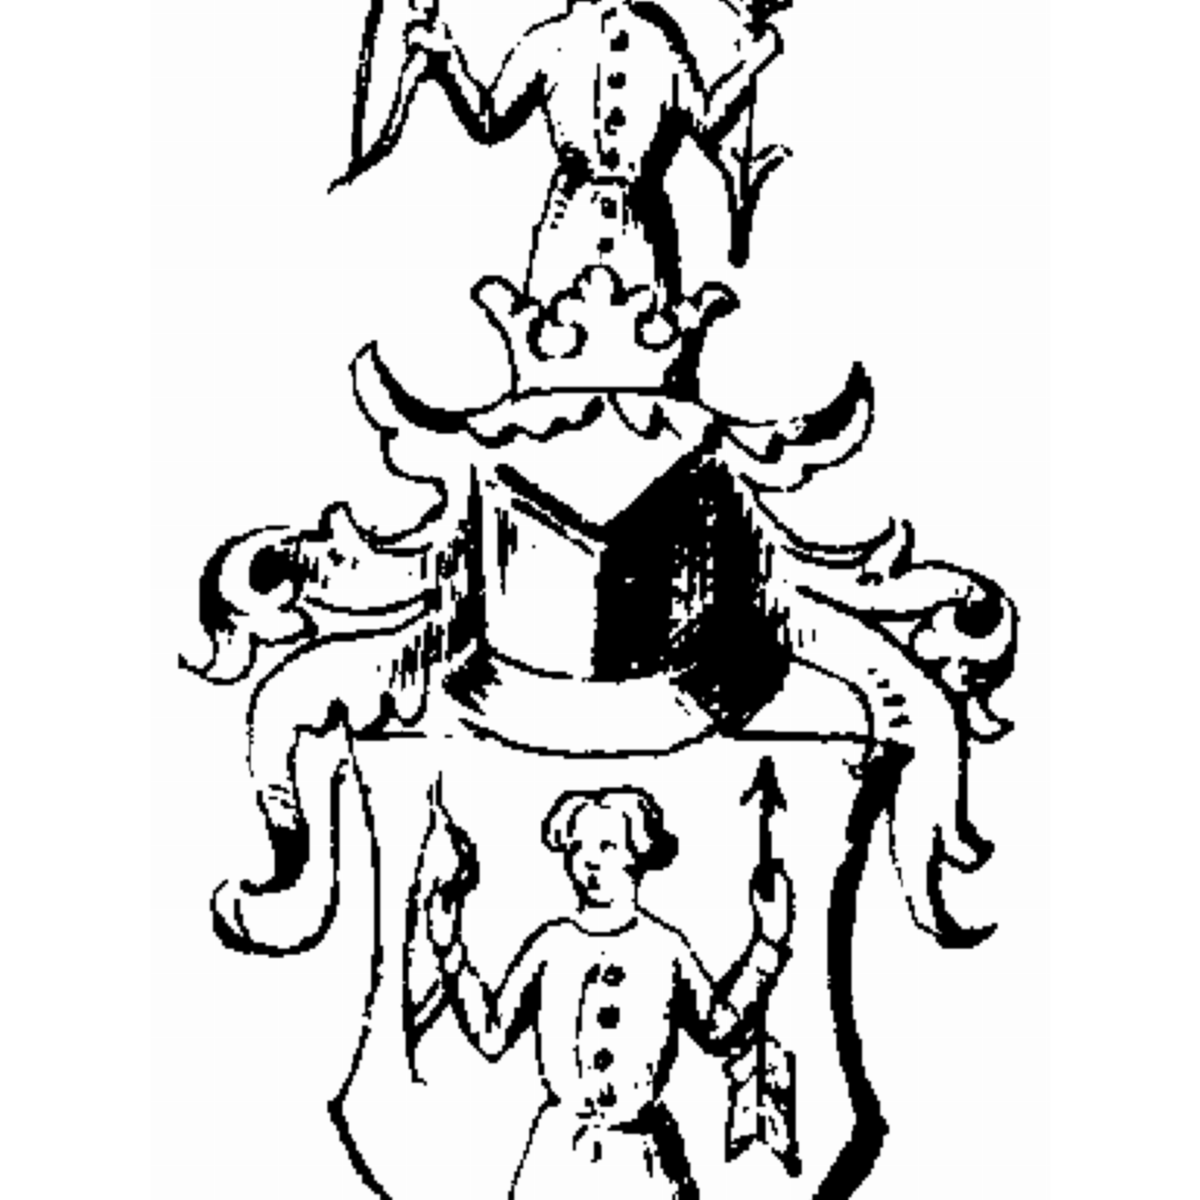 Wappen der Familie Val